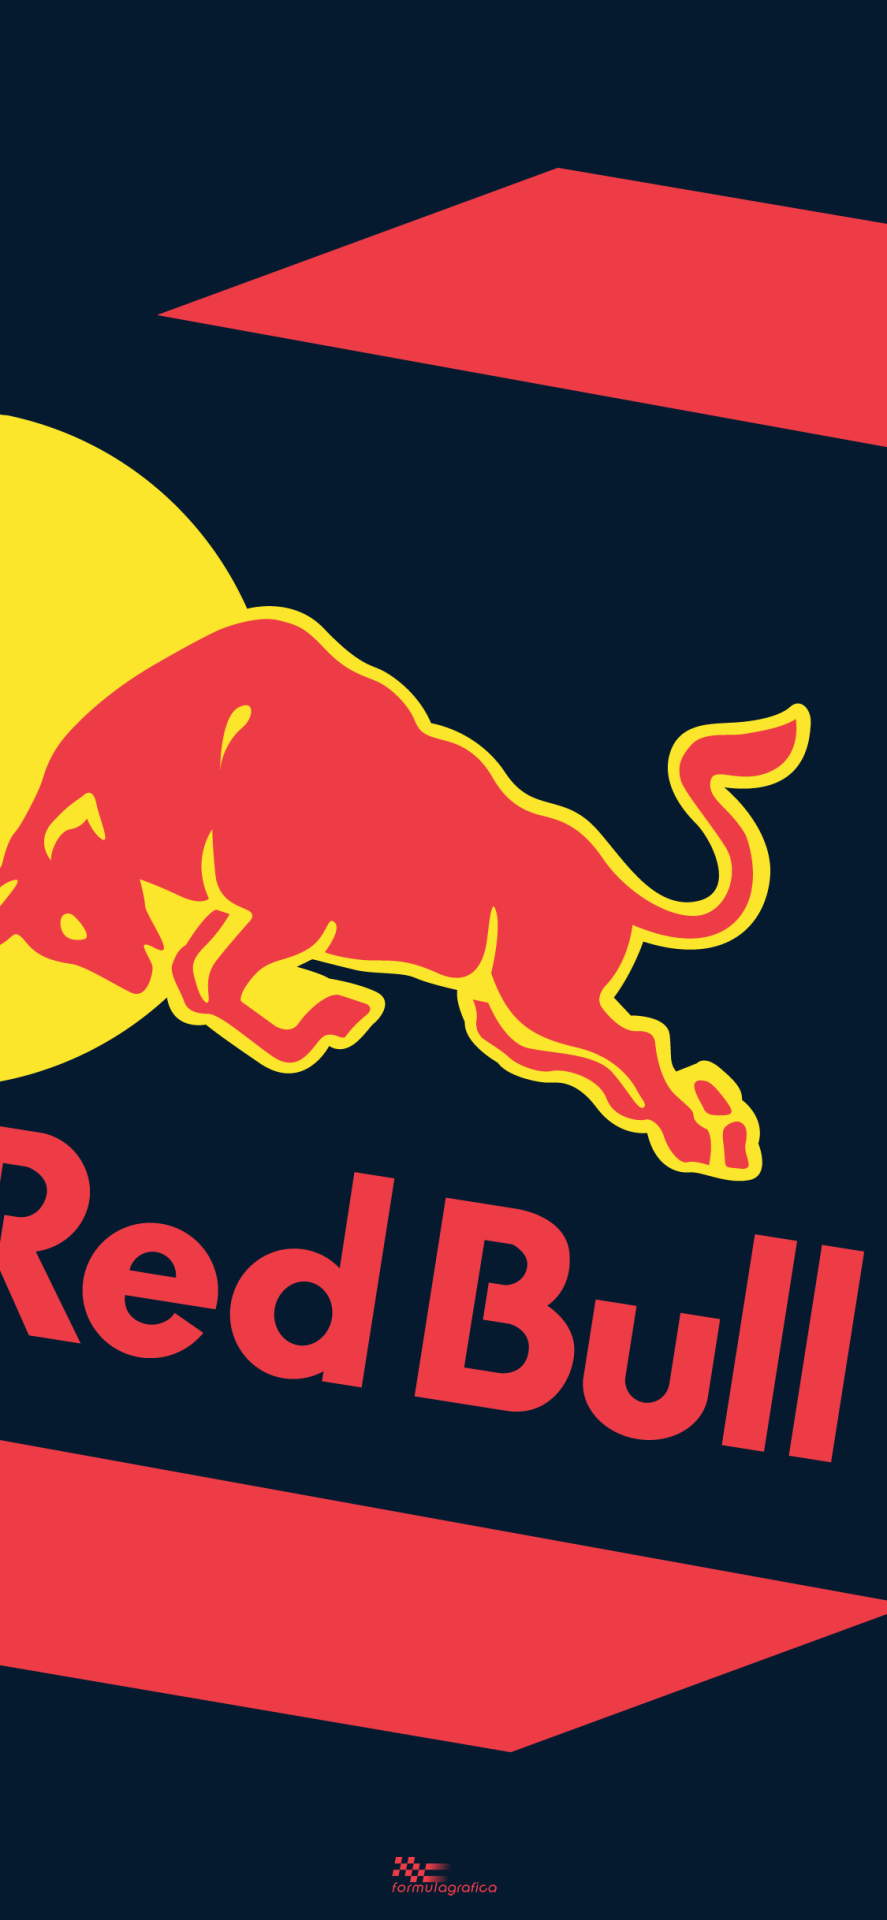 Red bull mobile. Redbull. Редбул логотип. Ред Булл картинки. Red bull mobile логотип.